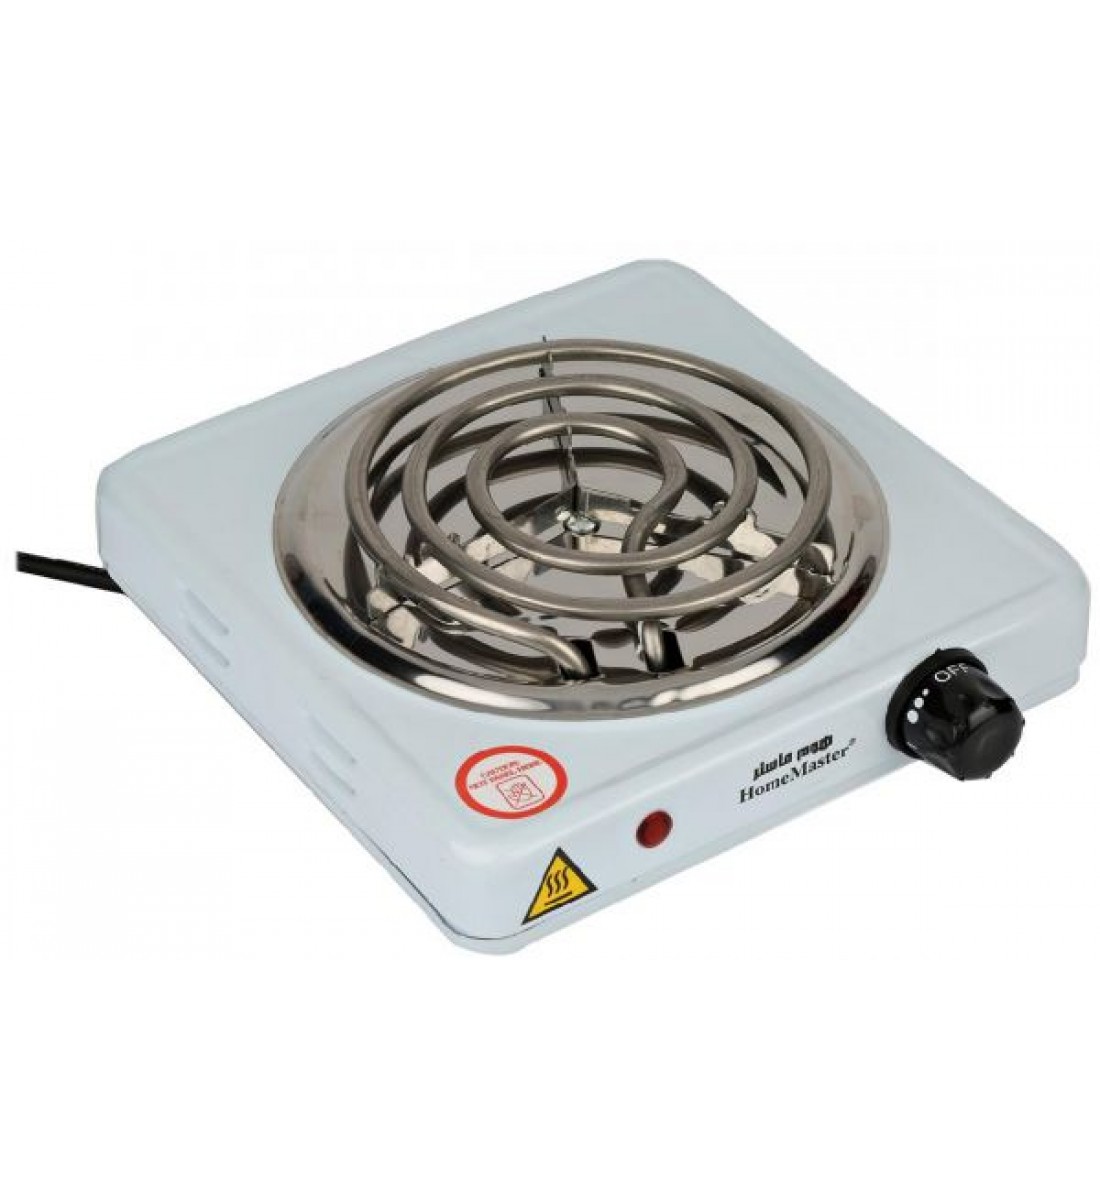 سخان طبخ كهربائي من هوم ماستر، HM-100